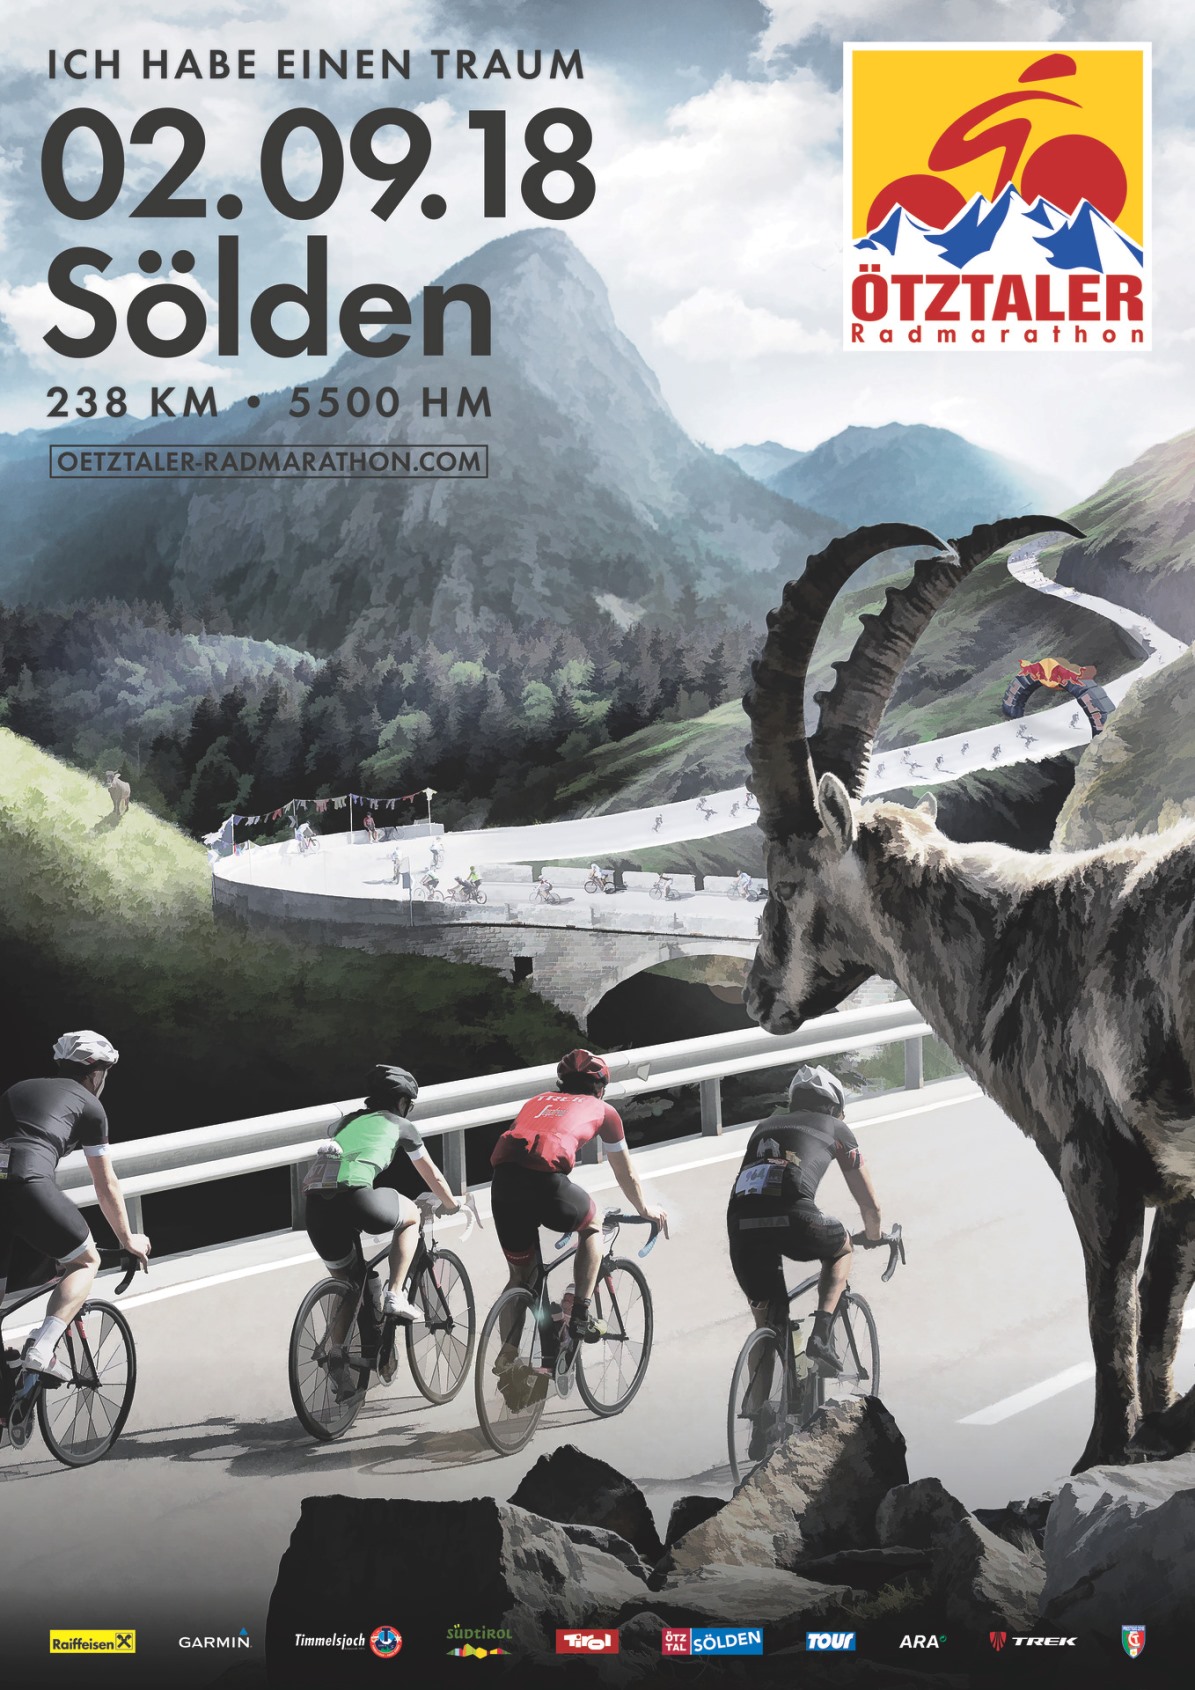 Otztaler Radmarathon